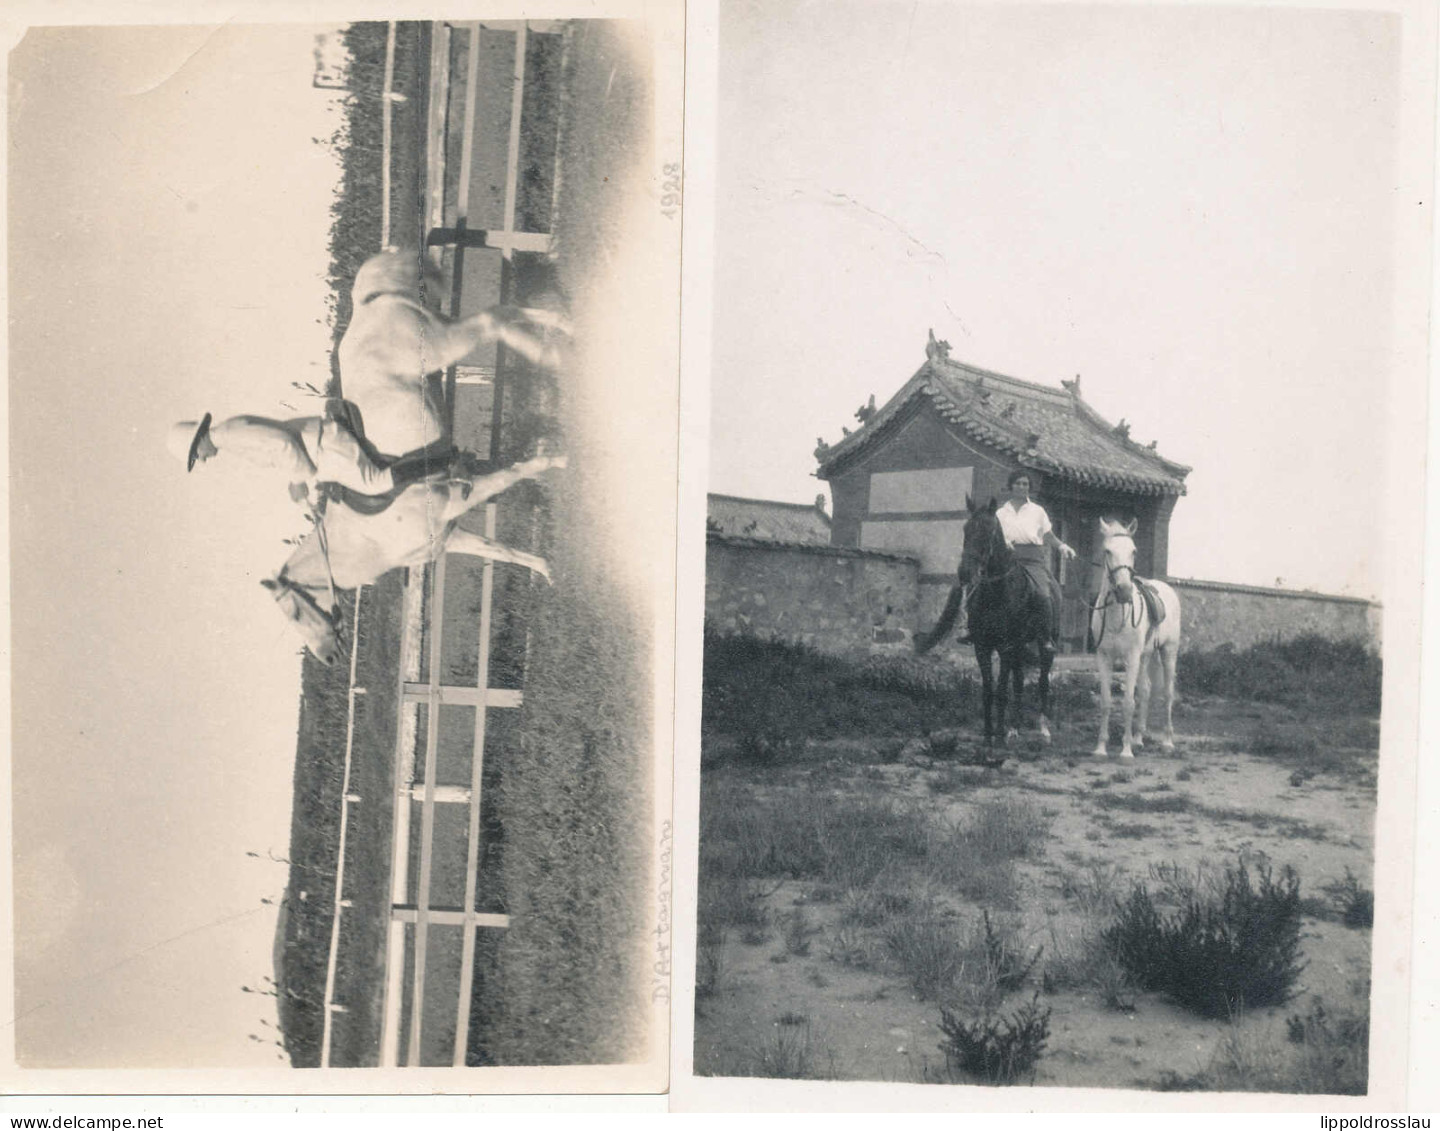 * 41 Stck. Fotos Besuch In Tientsin 1938, Viele Fotos Bei Der Arbeit Mit Pferden, Gehaltvoller Posten! - Non Classés